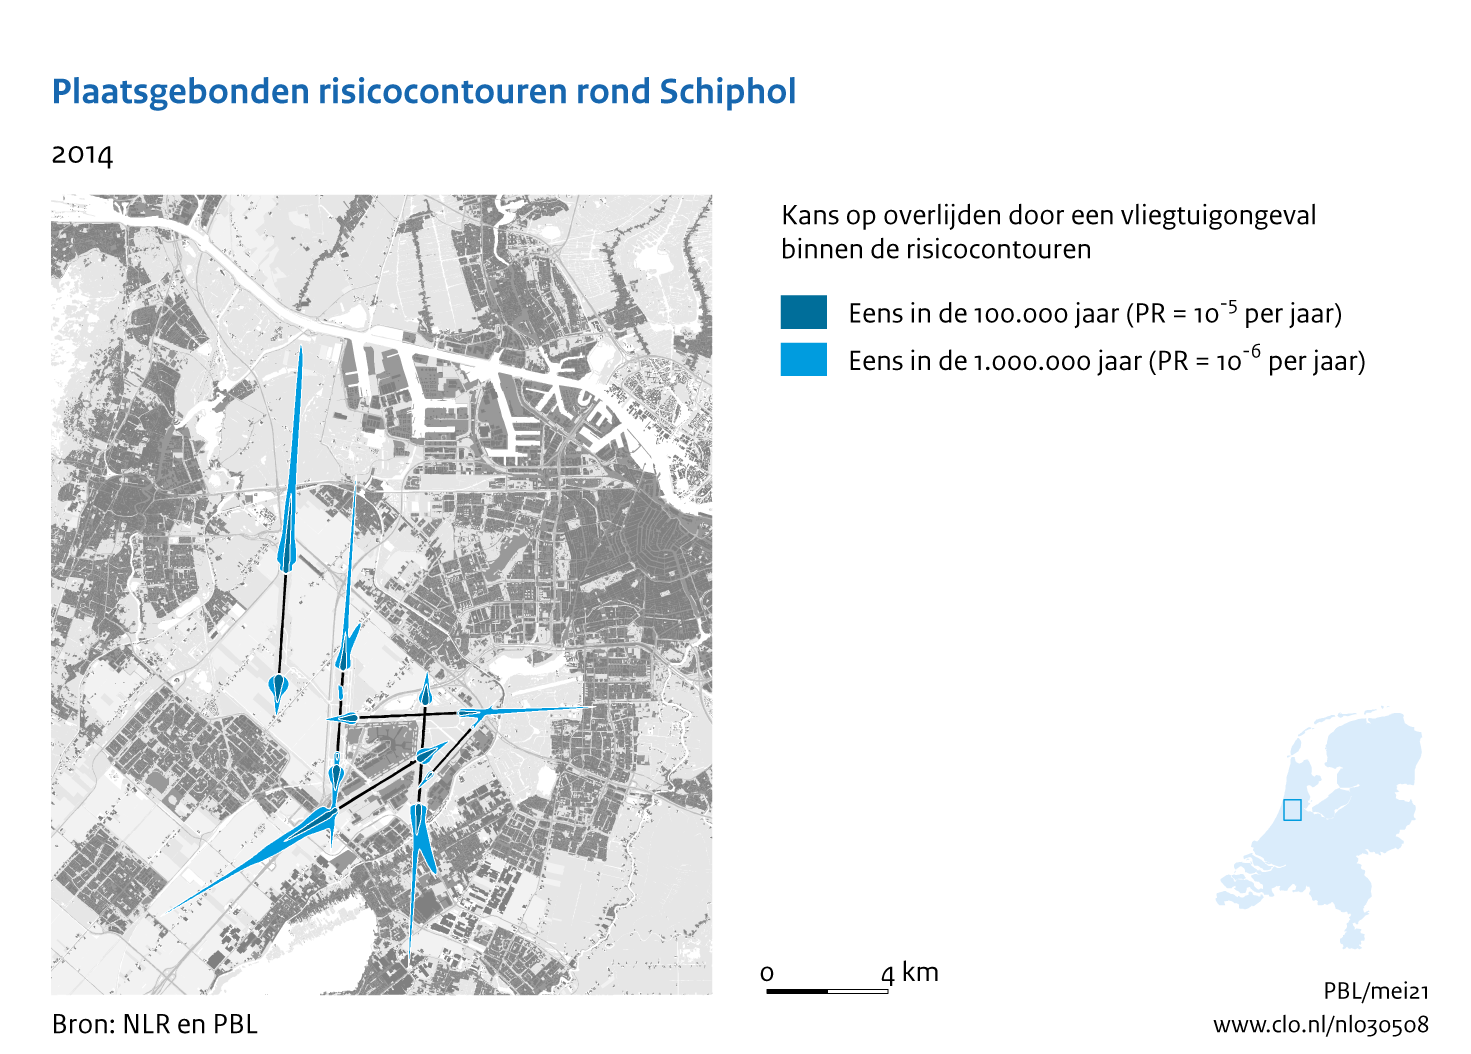 Figuur Plaatsgebonden risicocontouren rond Schiphol, 2014. In de rest van de tekst wordt deze figuur uitgebreider uitgelegd.